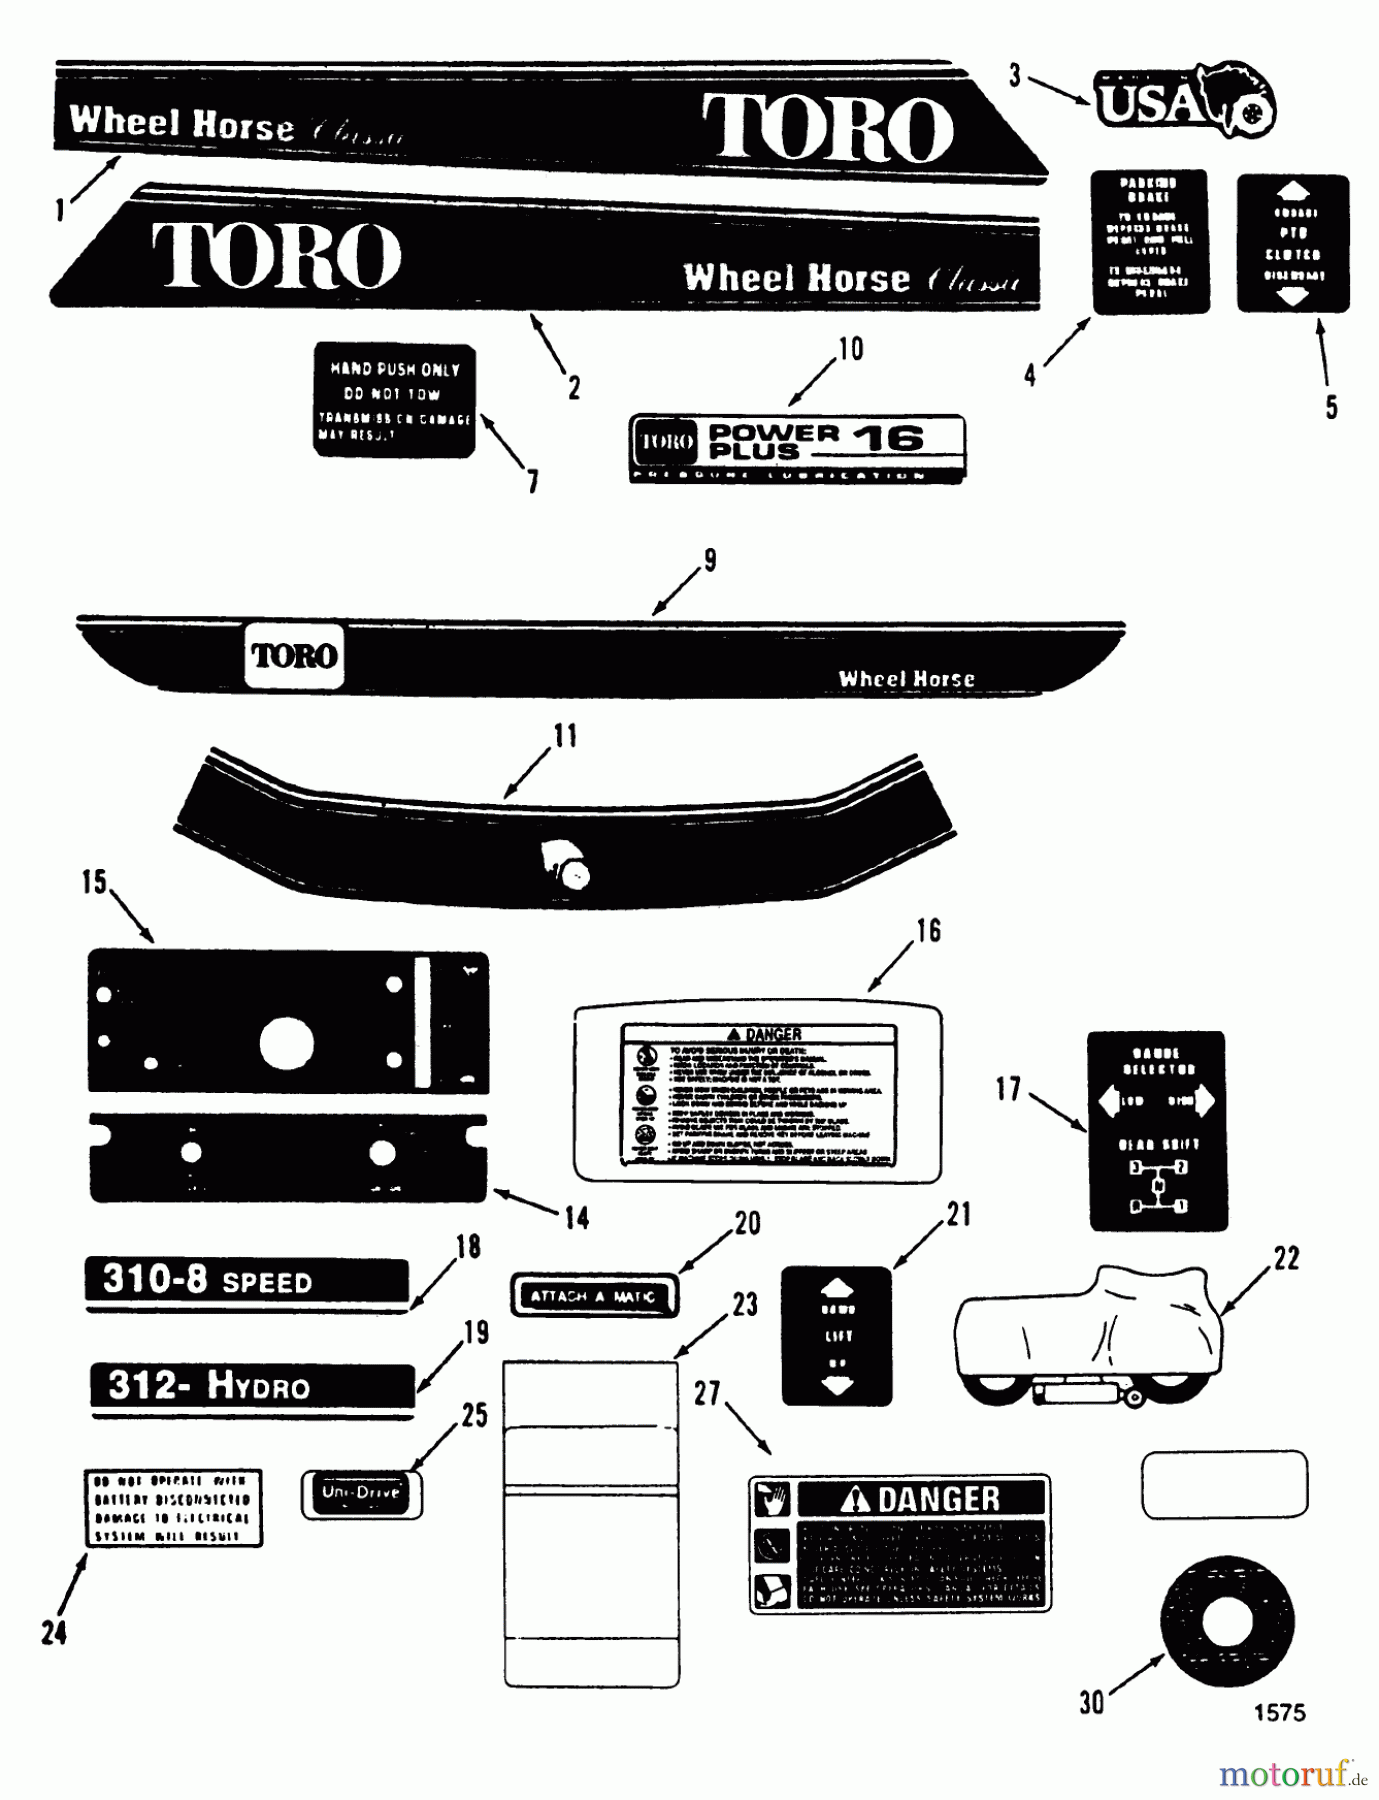  Toro Neu Mowers, Lawn & Garden Tractor Seite 1 51-16OE02 (416-H) - Toro 416-H Garden Tractor, 1992 (2000001-2999999) DECALS